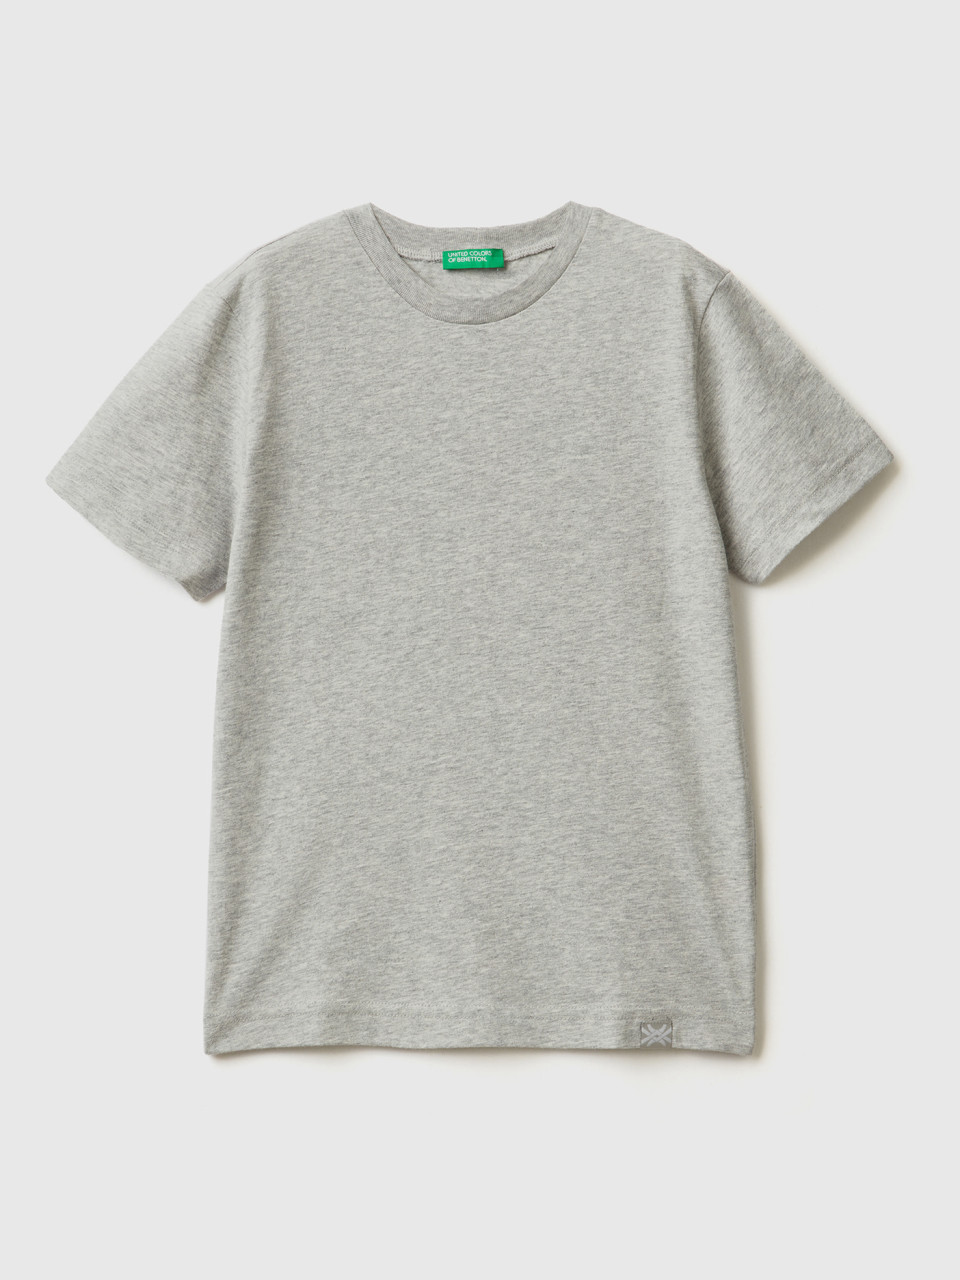 Benetton, Camiseta De Algodón Orgánico, Gris Claro, Niños